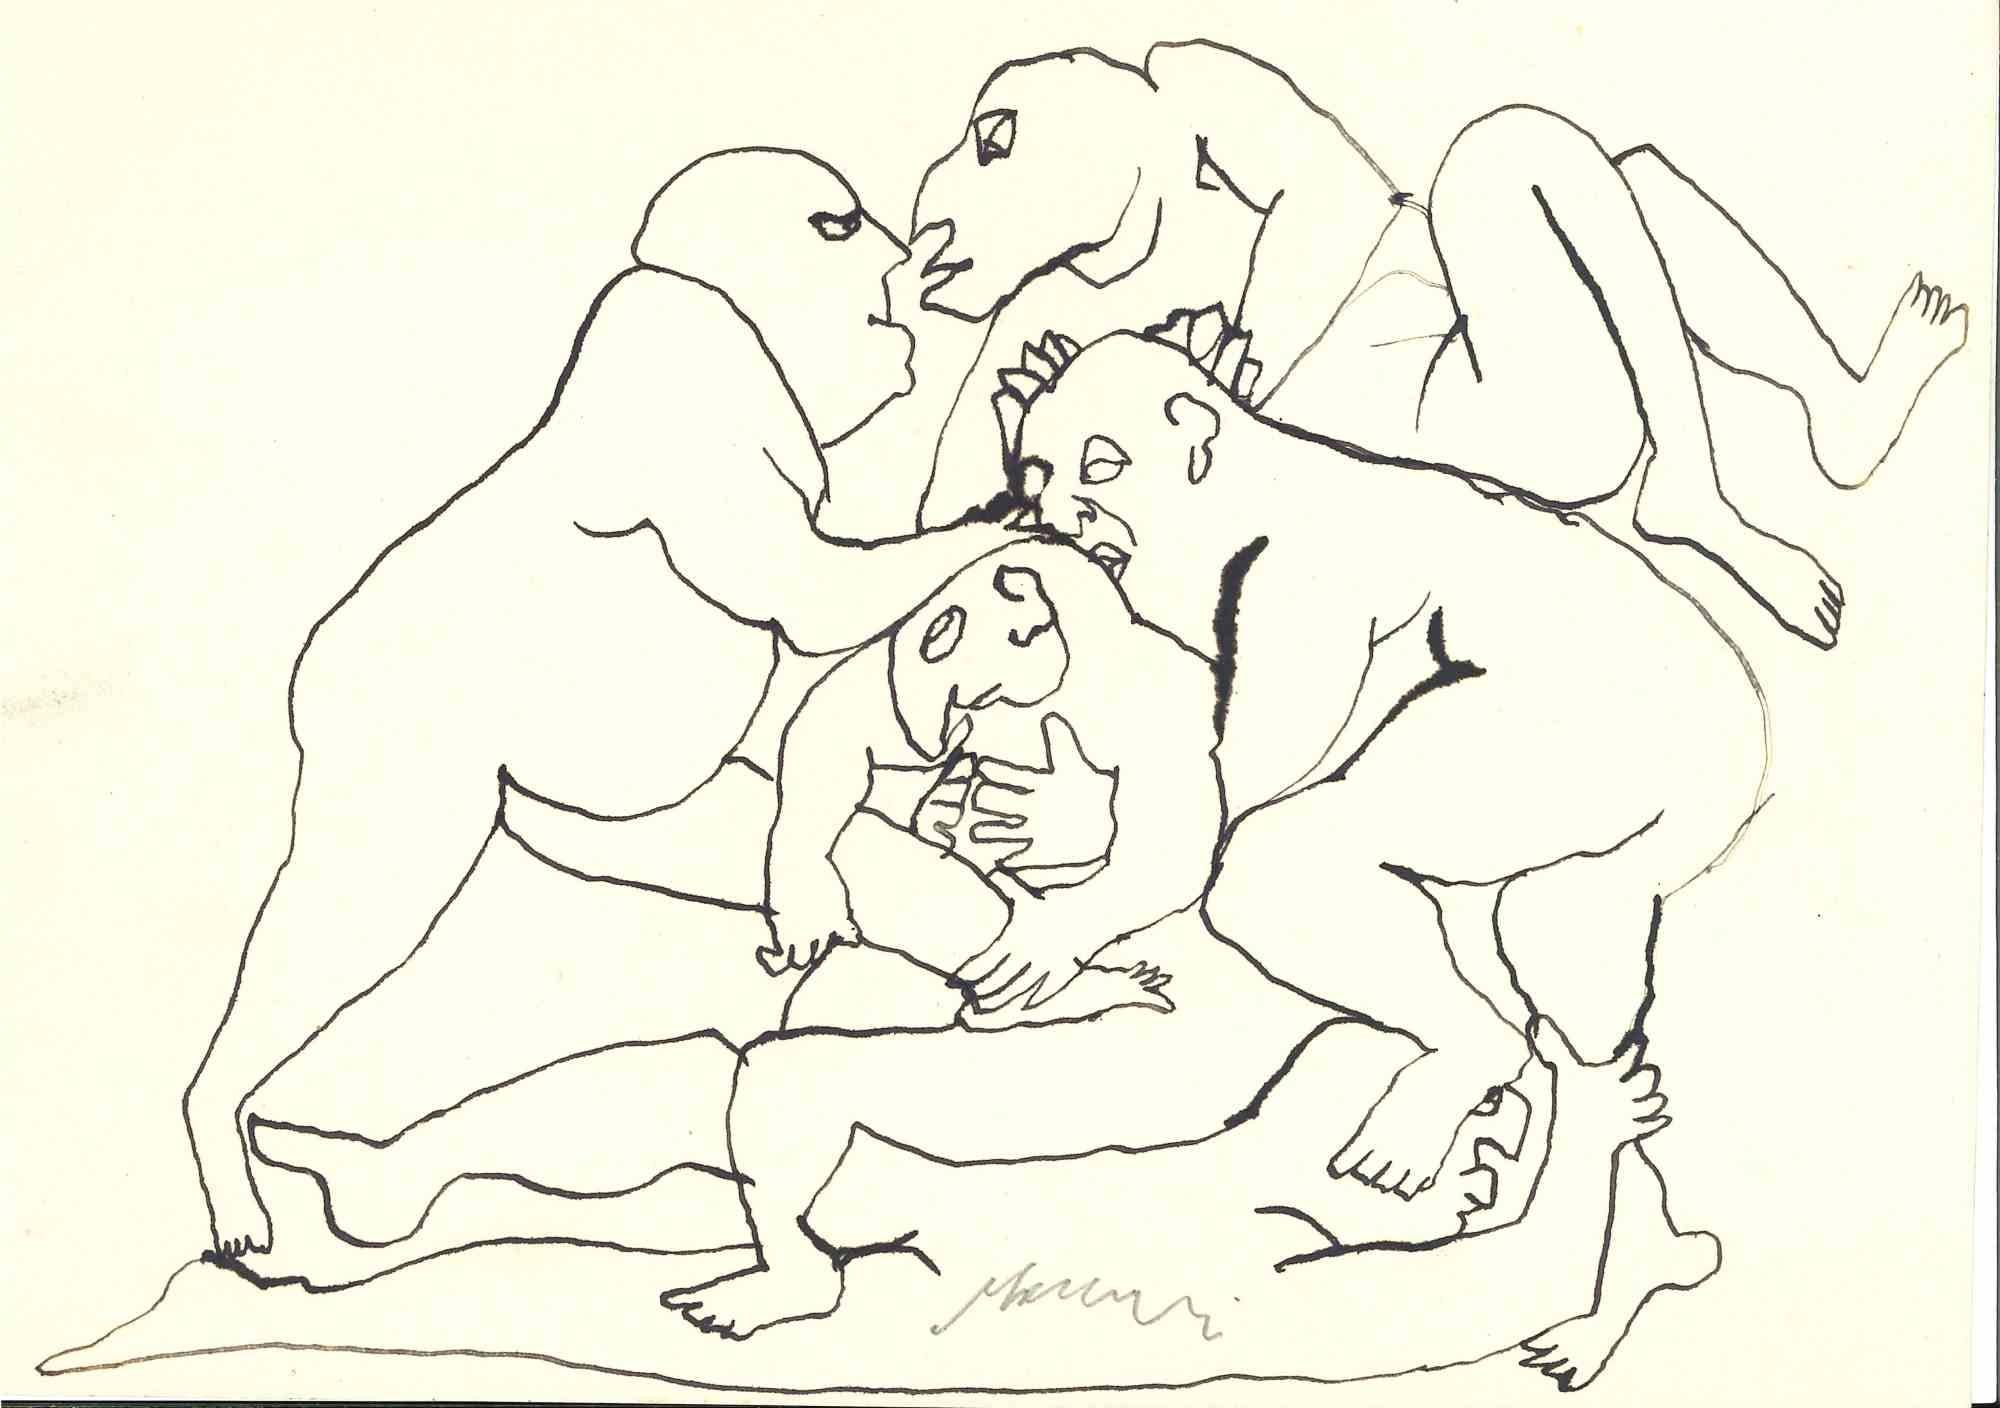 Fight est un dessin à l'encre de Chine réalisé par Mino Maccari (1924-1989) au milieu du 20e siècle.

Signé à la main.

Bon état avec de légères rousseurs.

Mino Maccari (Sienne, 1924-Rome, 16 juin 1989) est un écrivain, peintre, graveur et